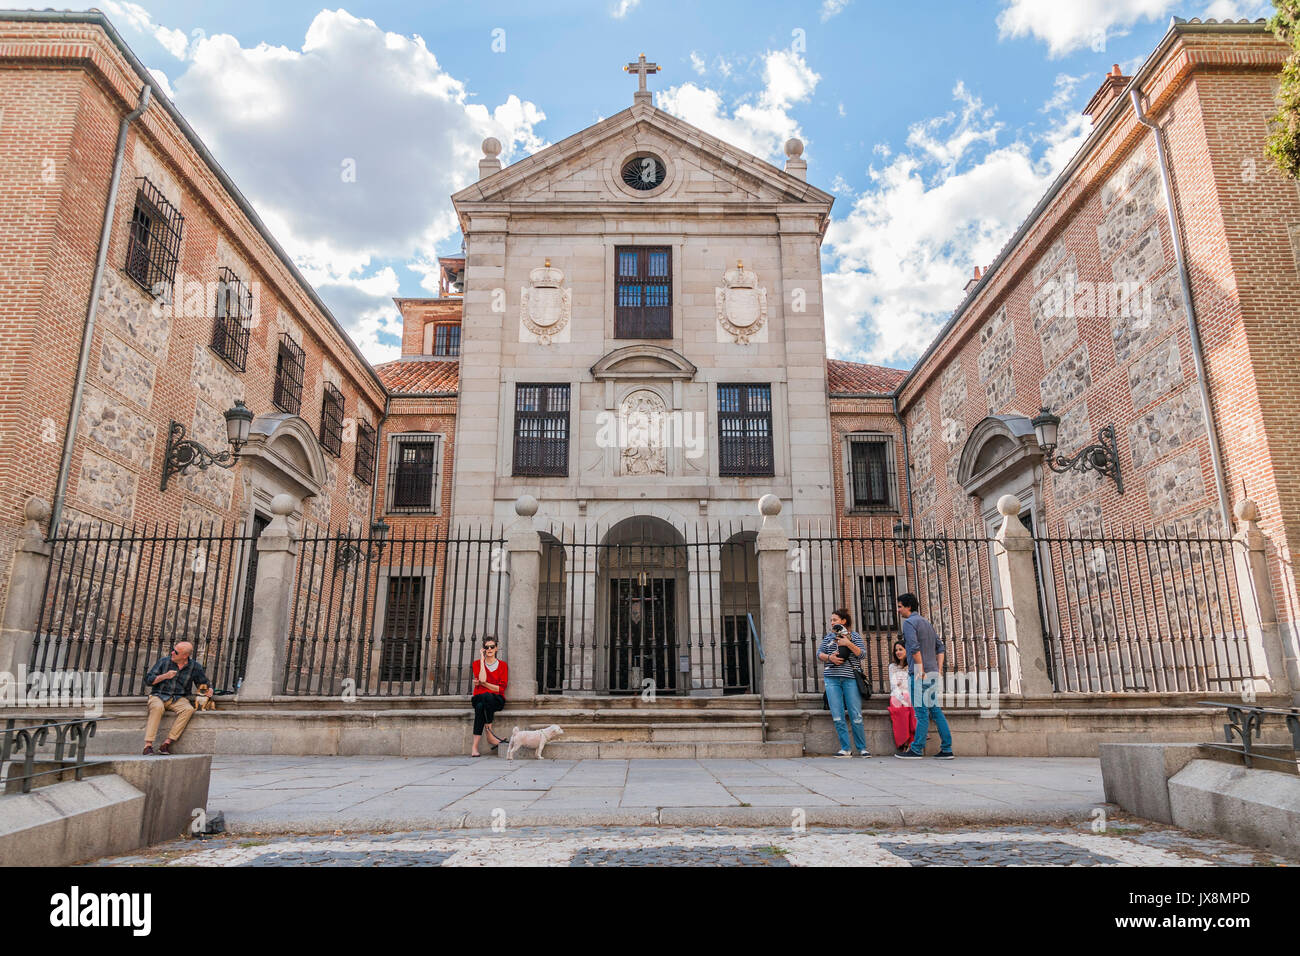 Monasterio de la Encarnación. Madrid. España Stock Photo